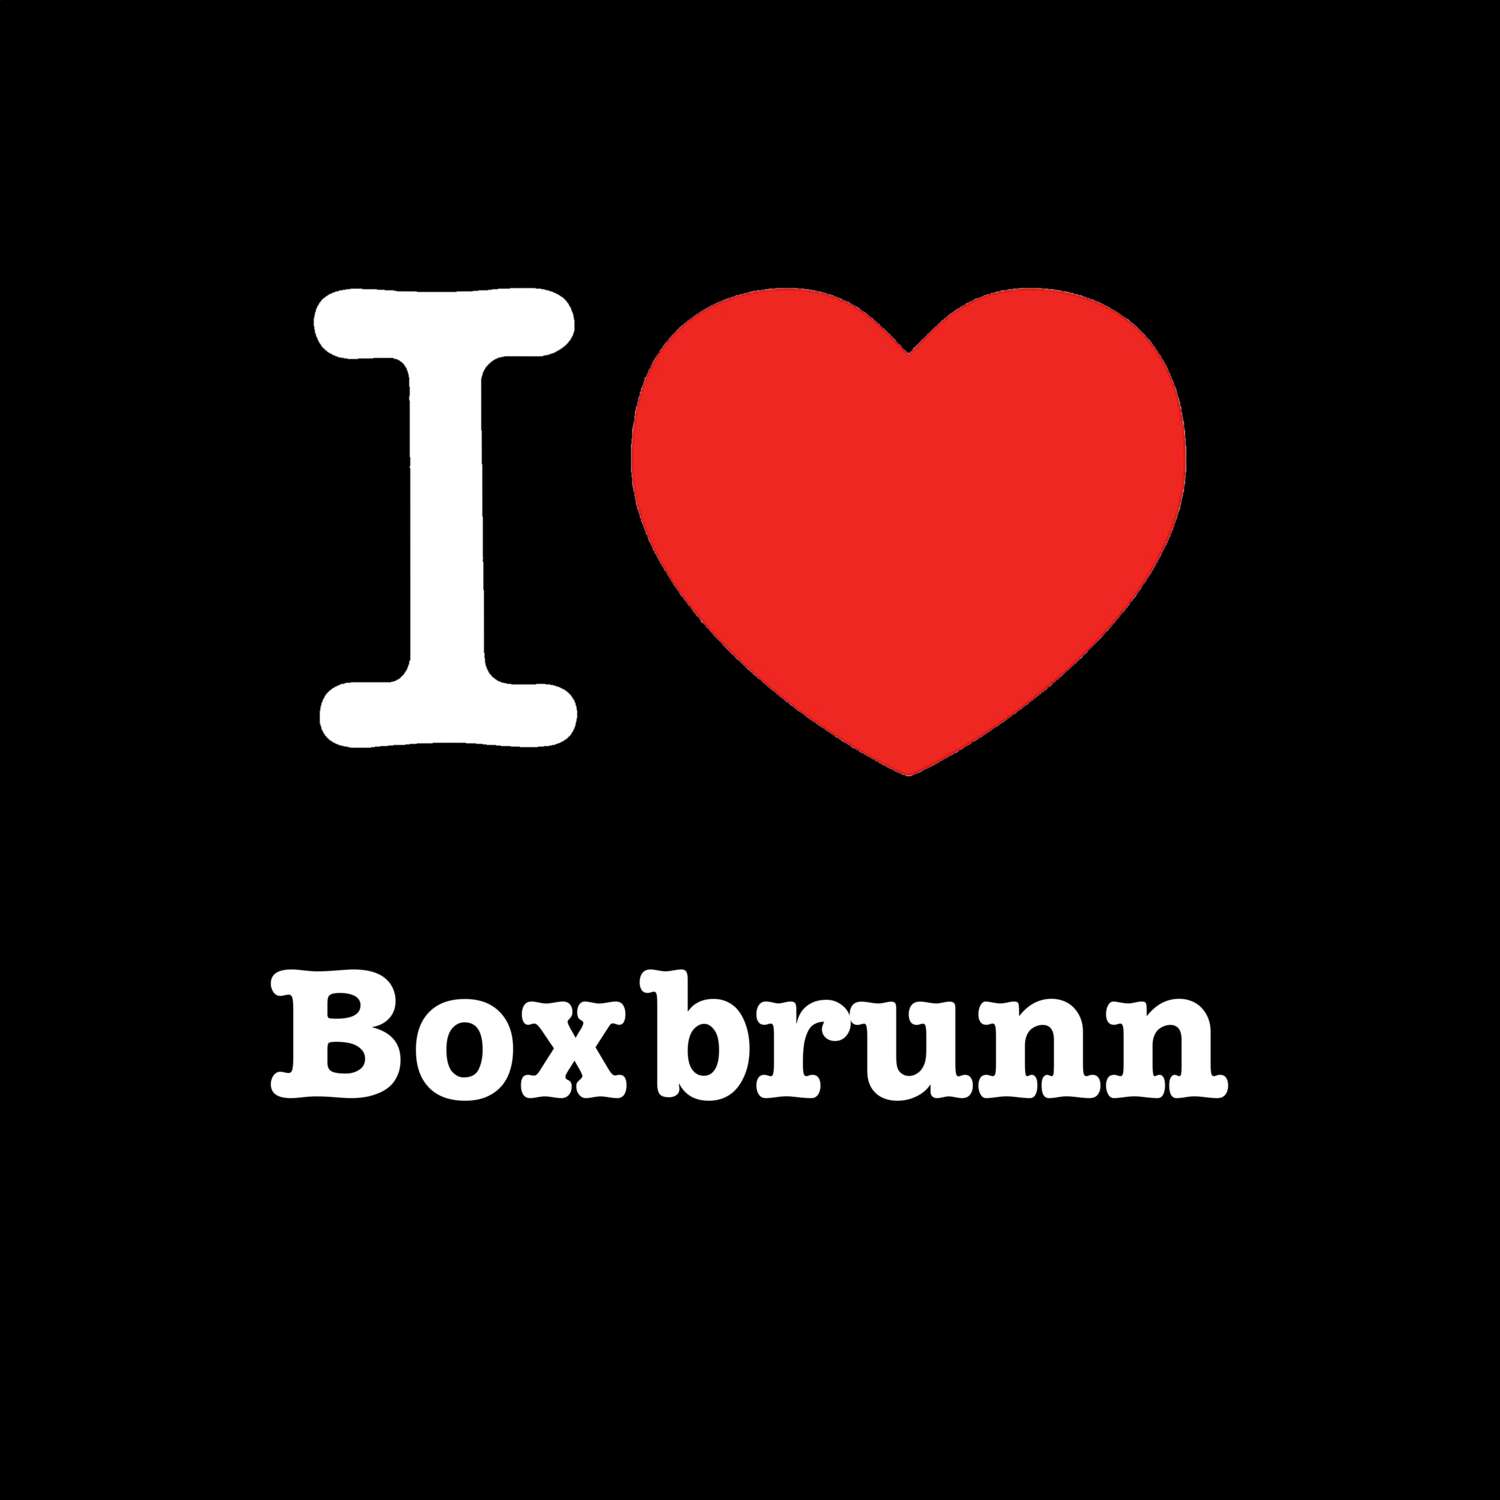 Boxbrunn T-Shirt »I love«